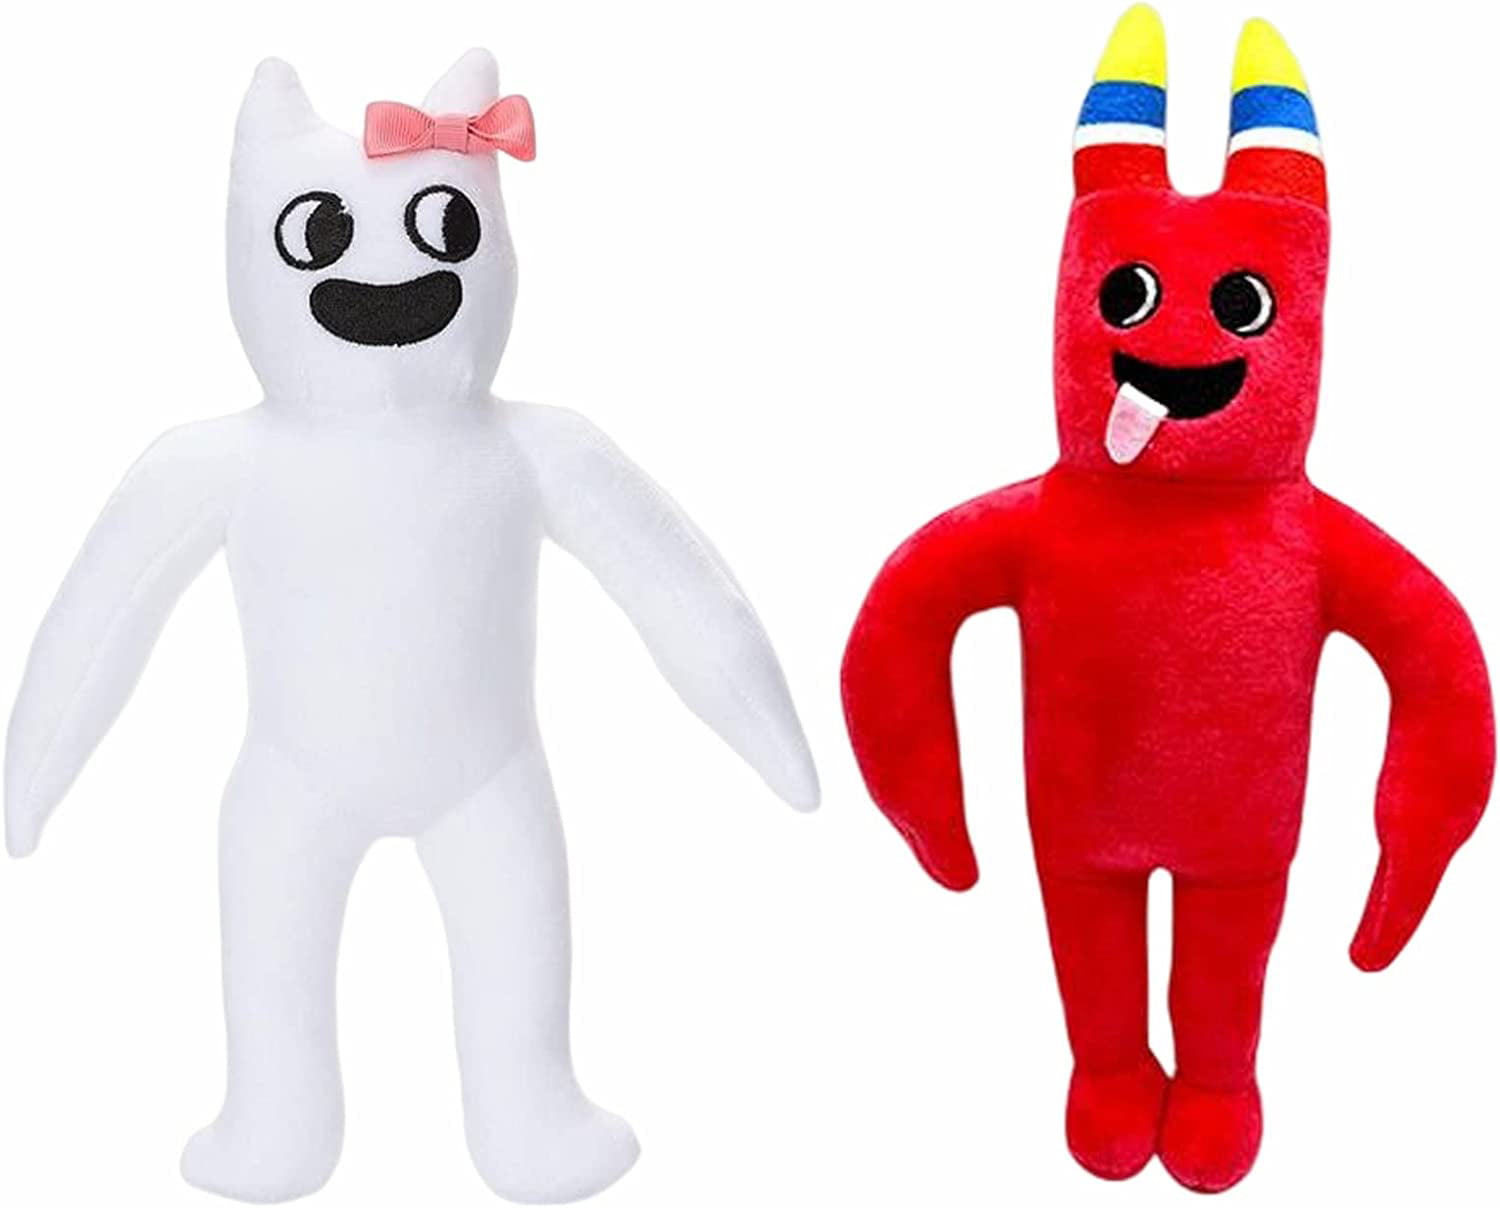 Garten Of Banban Plush Toys, Jumbo Josh Plushies Toys, Figuras Macias De  Animais Recheadas Para CriançAs E Adultos. (Laranja) em Promoção na  Americanas